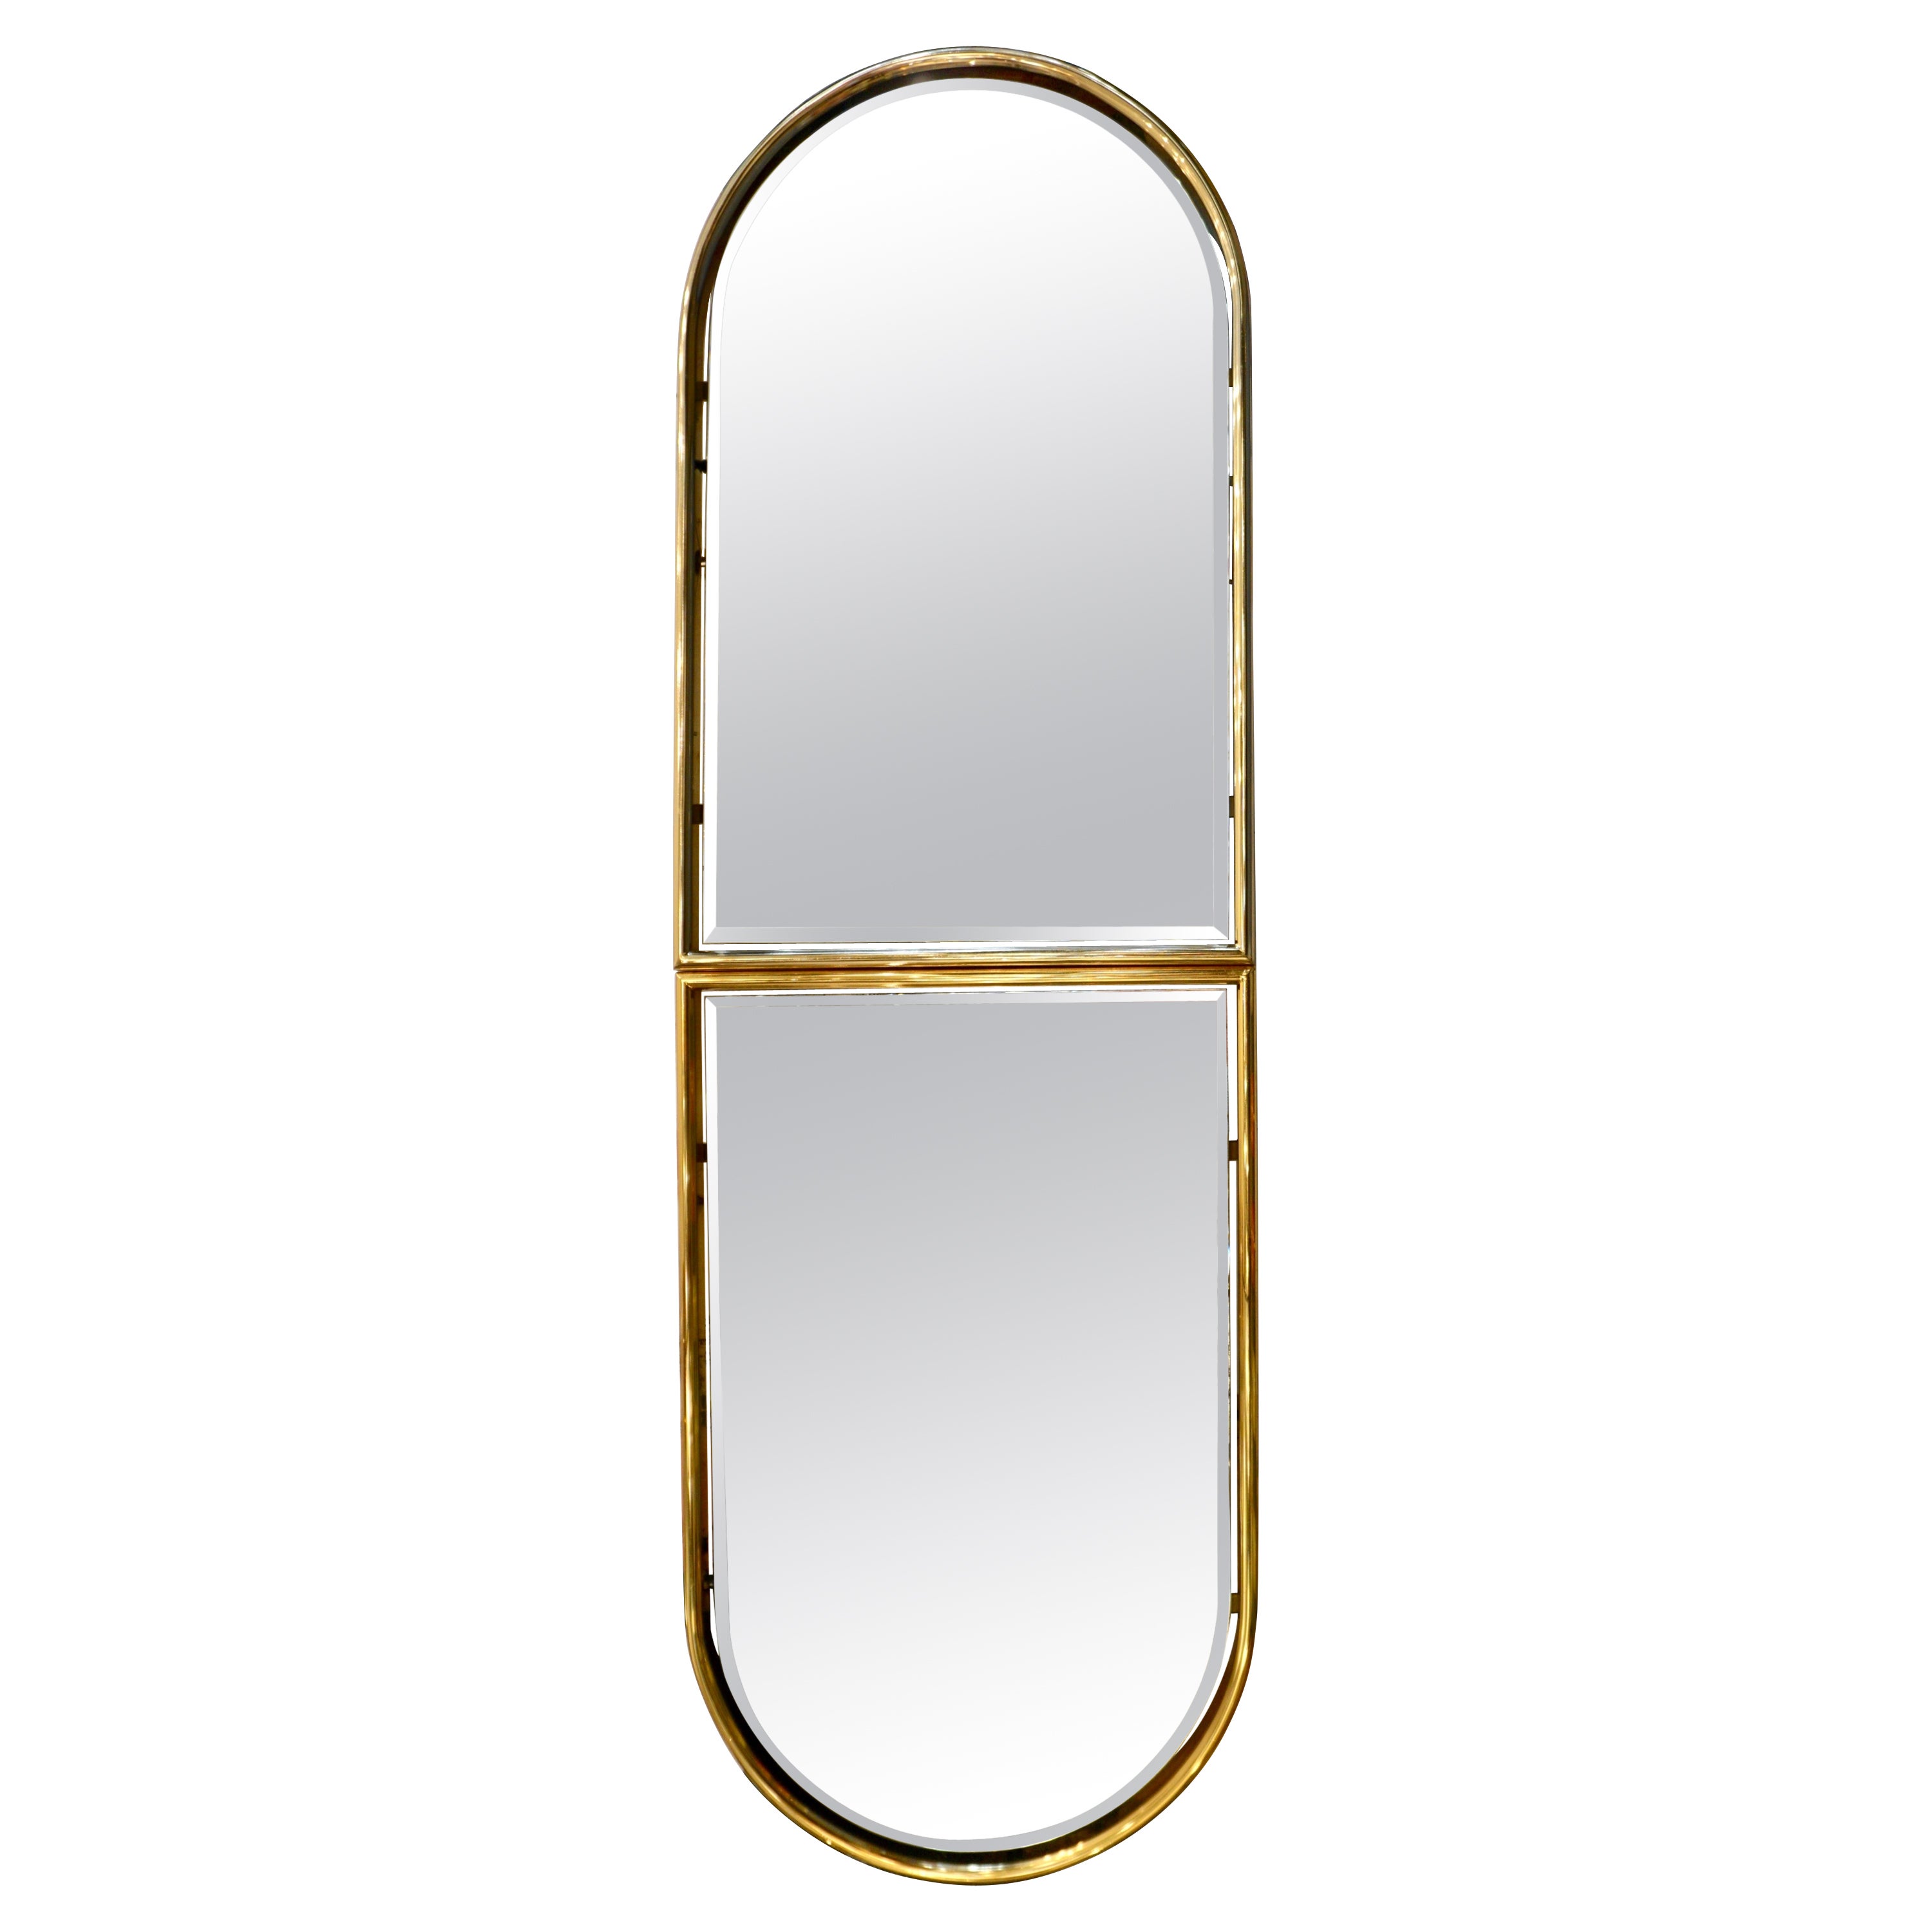 Miroir flottant minimaliste italien des années 1960 avec cadre supérieur arqué rond